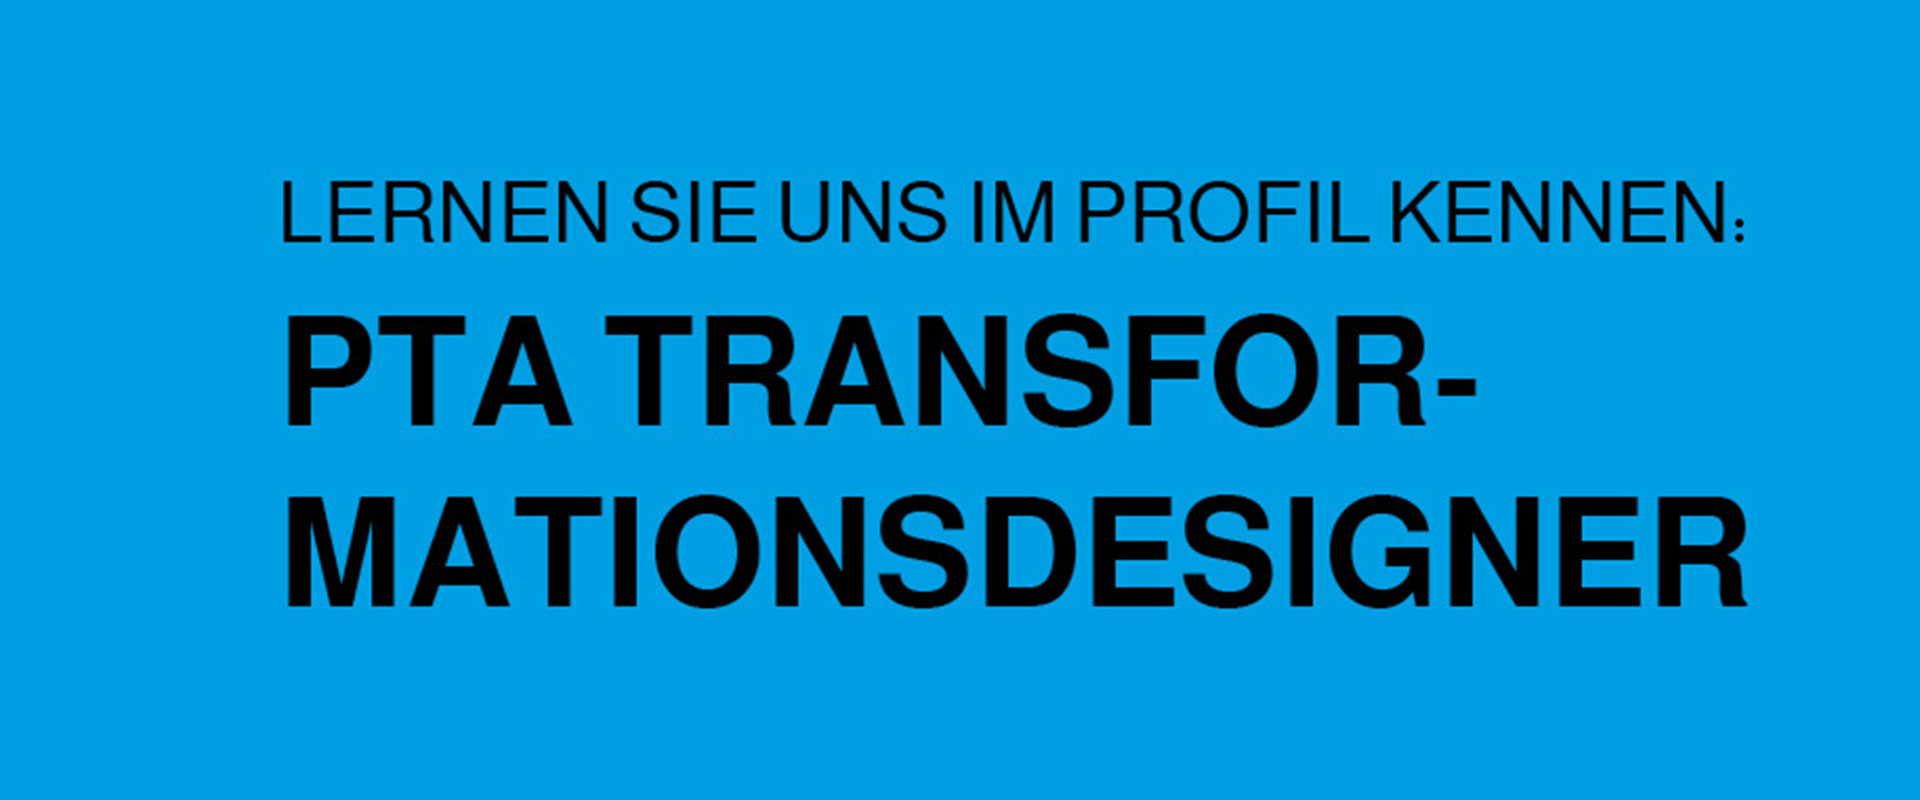 PTA Transformationsdesigner – grafisch gestalteter Text